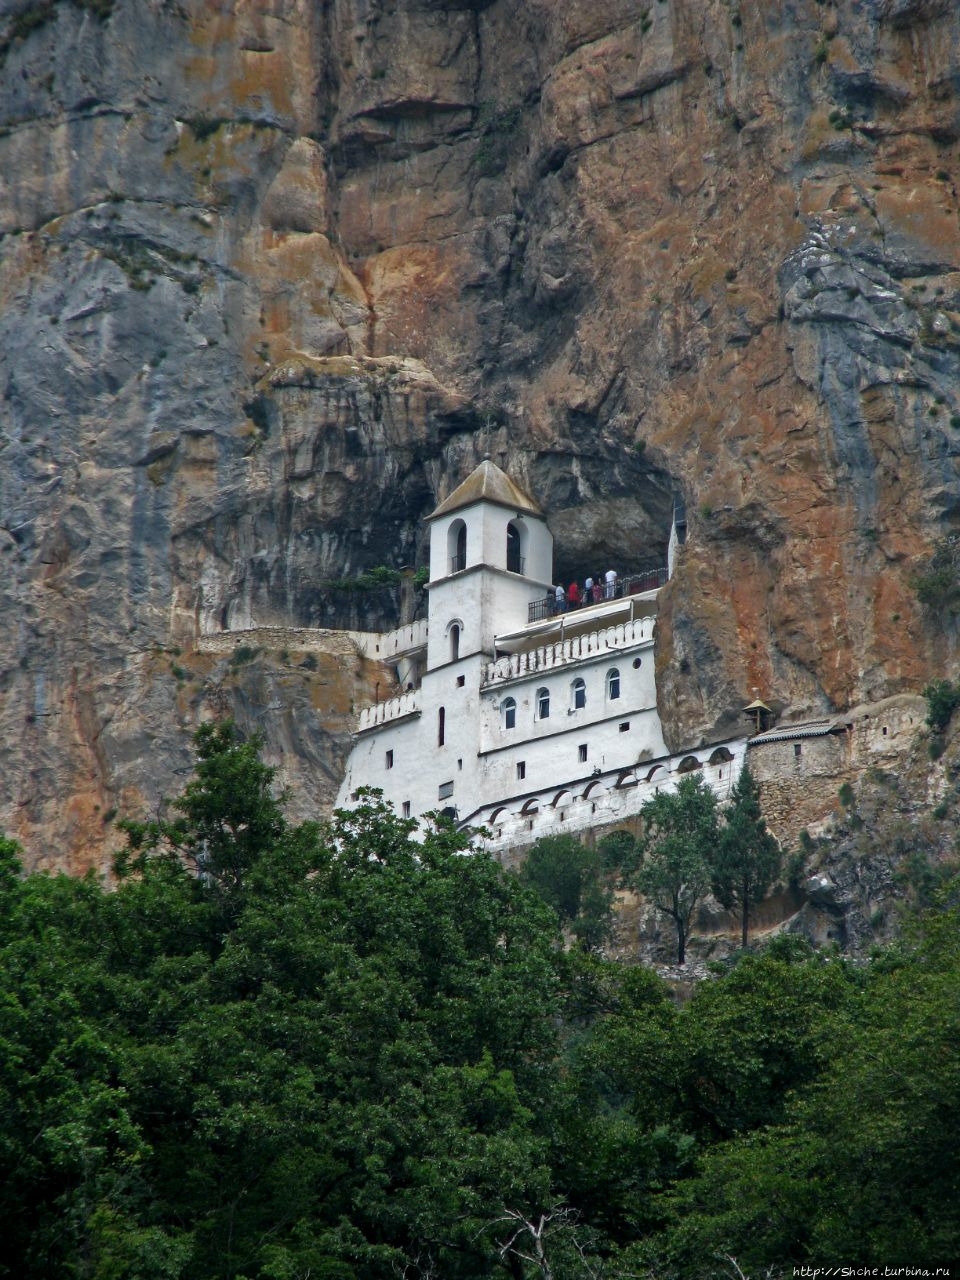 Монастырь Острог монастырь Острог, Черногория